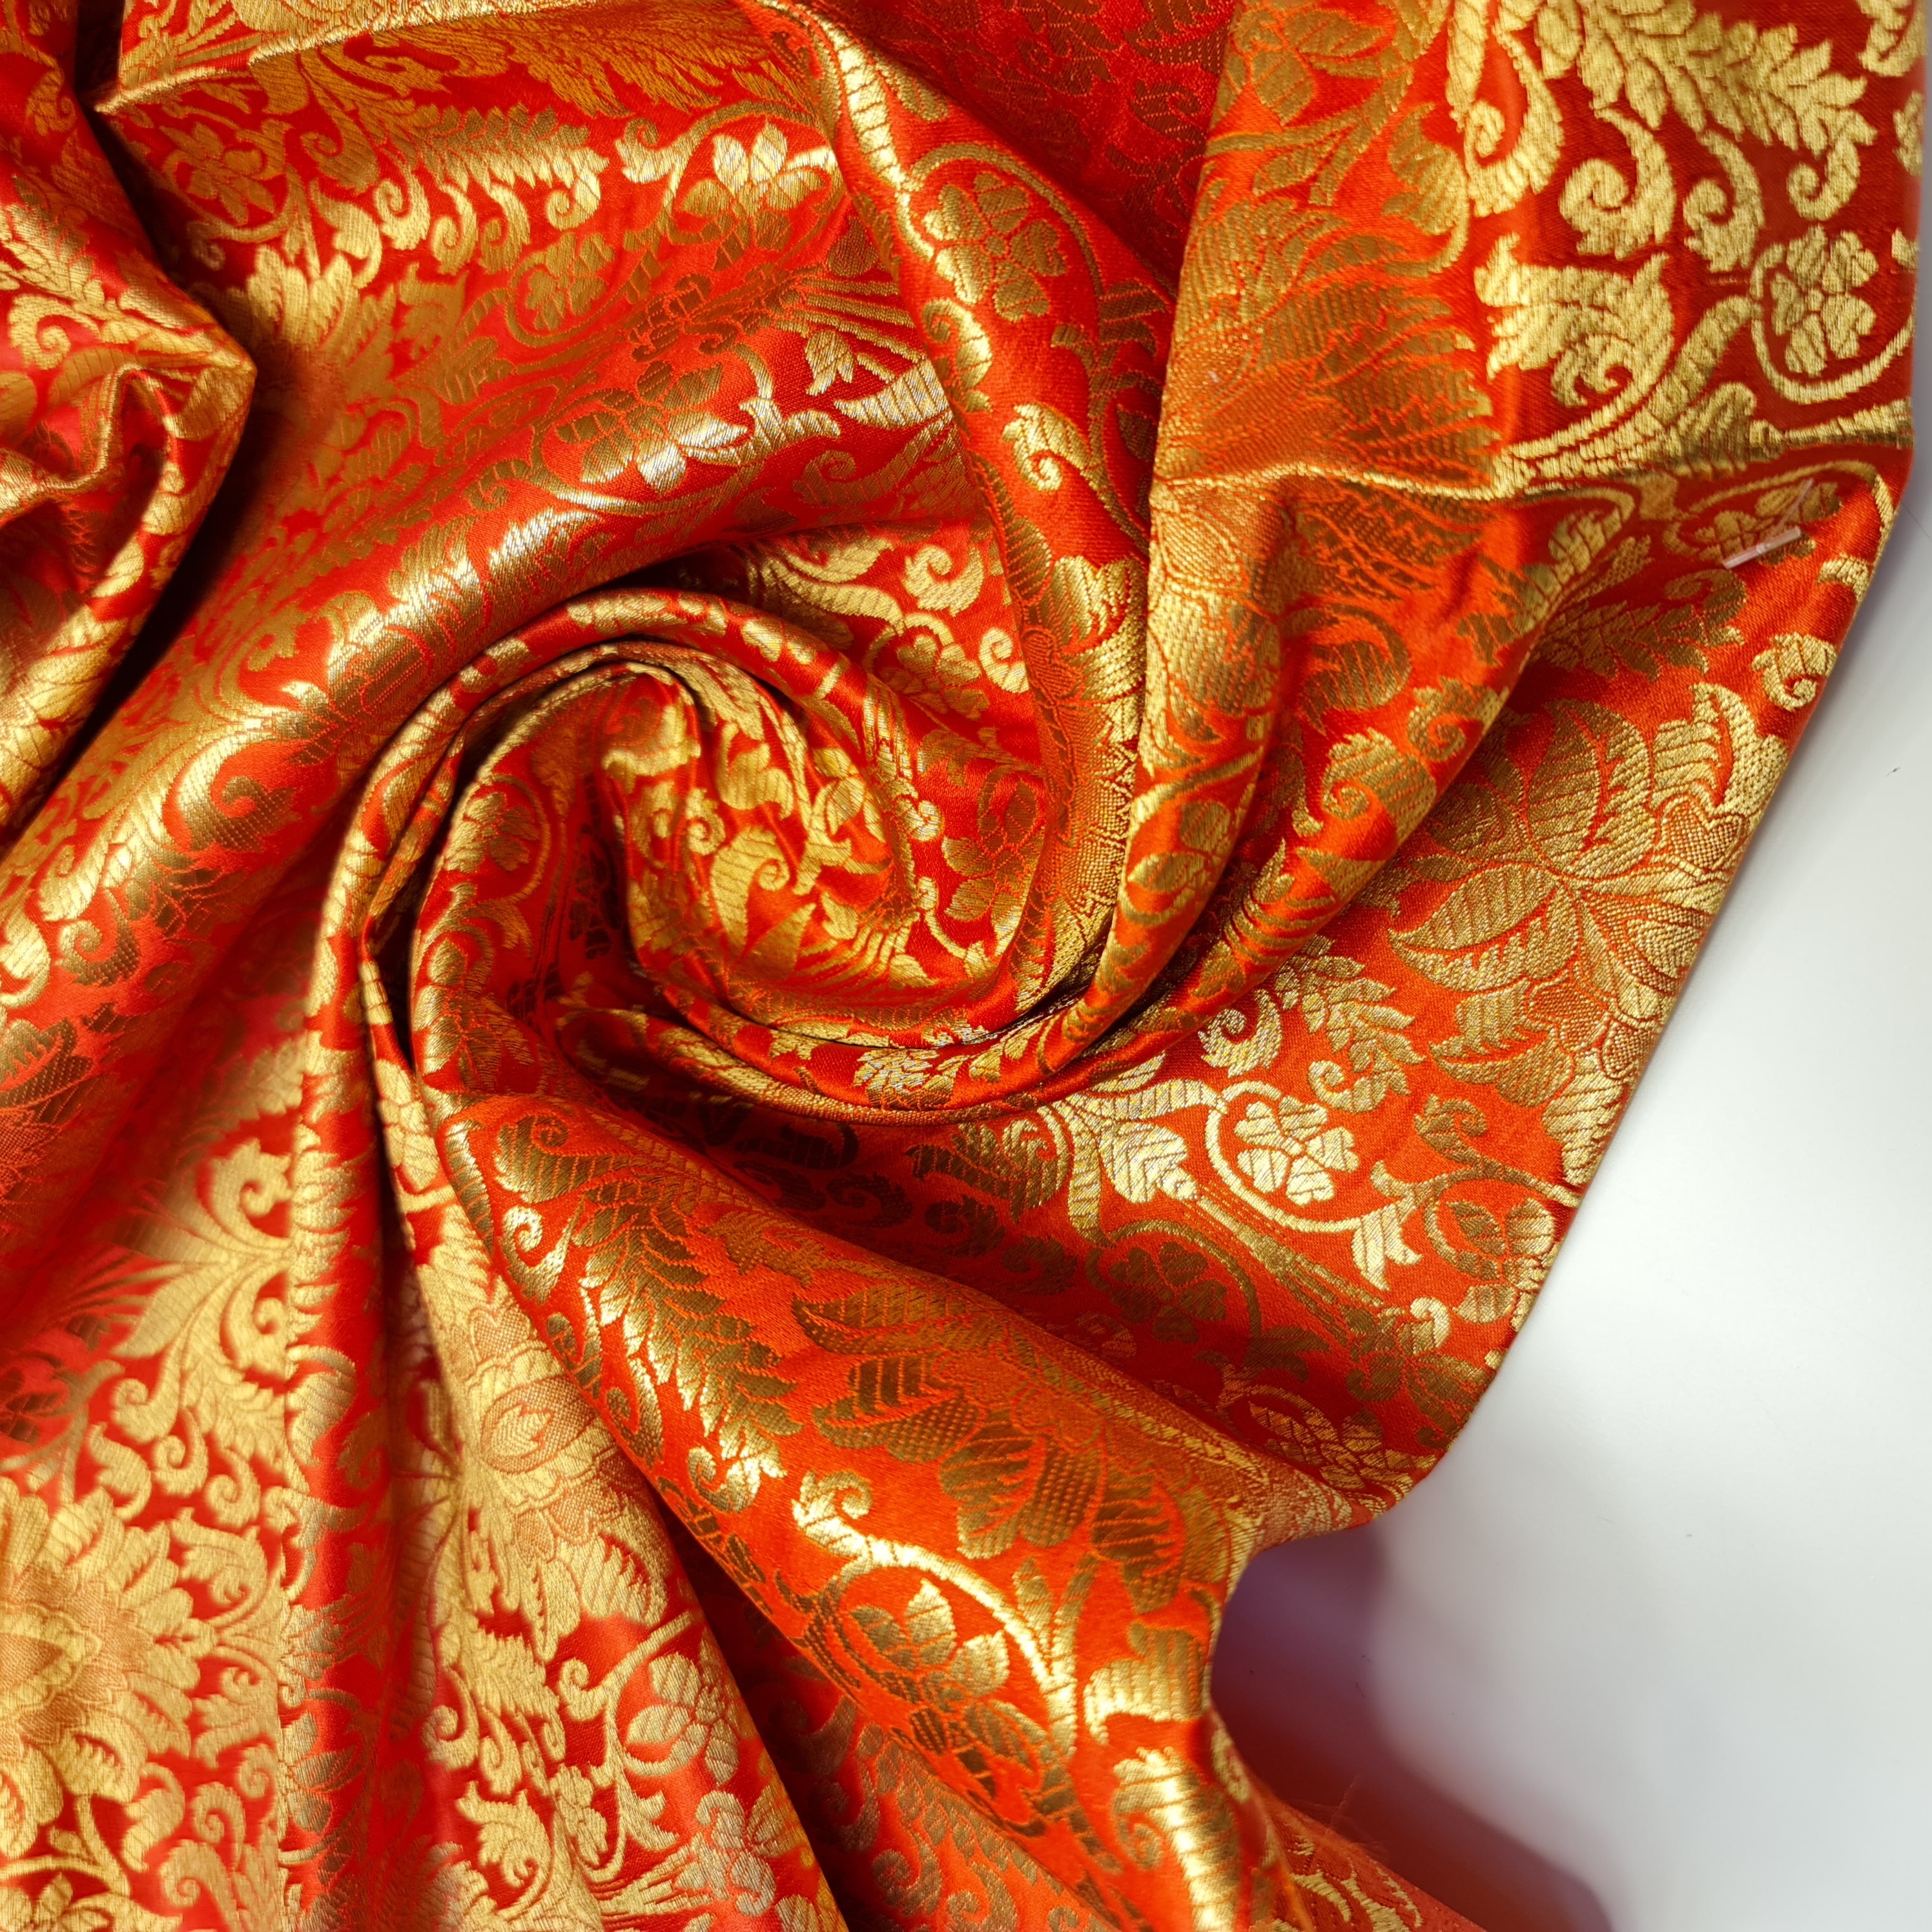 Orange felt background stock image. Image of fabric, metallic